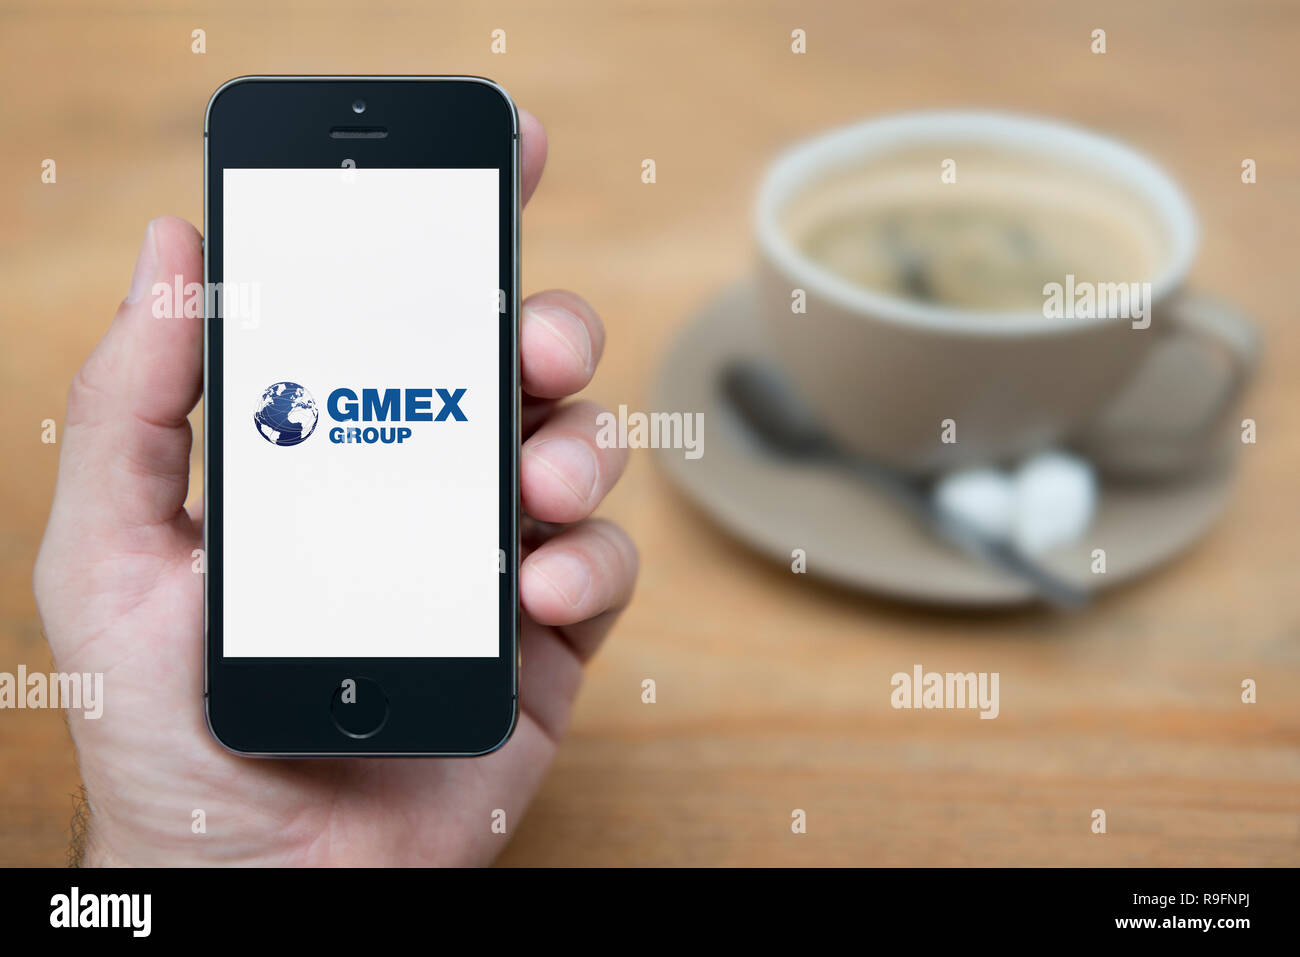 Un homme se penche sur son iPhone qui affiche le logo du groupe Gmex (usage éditorial uniquement). Banque D'Images